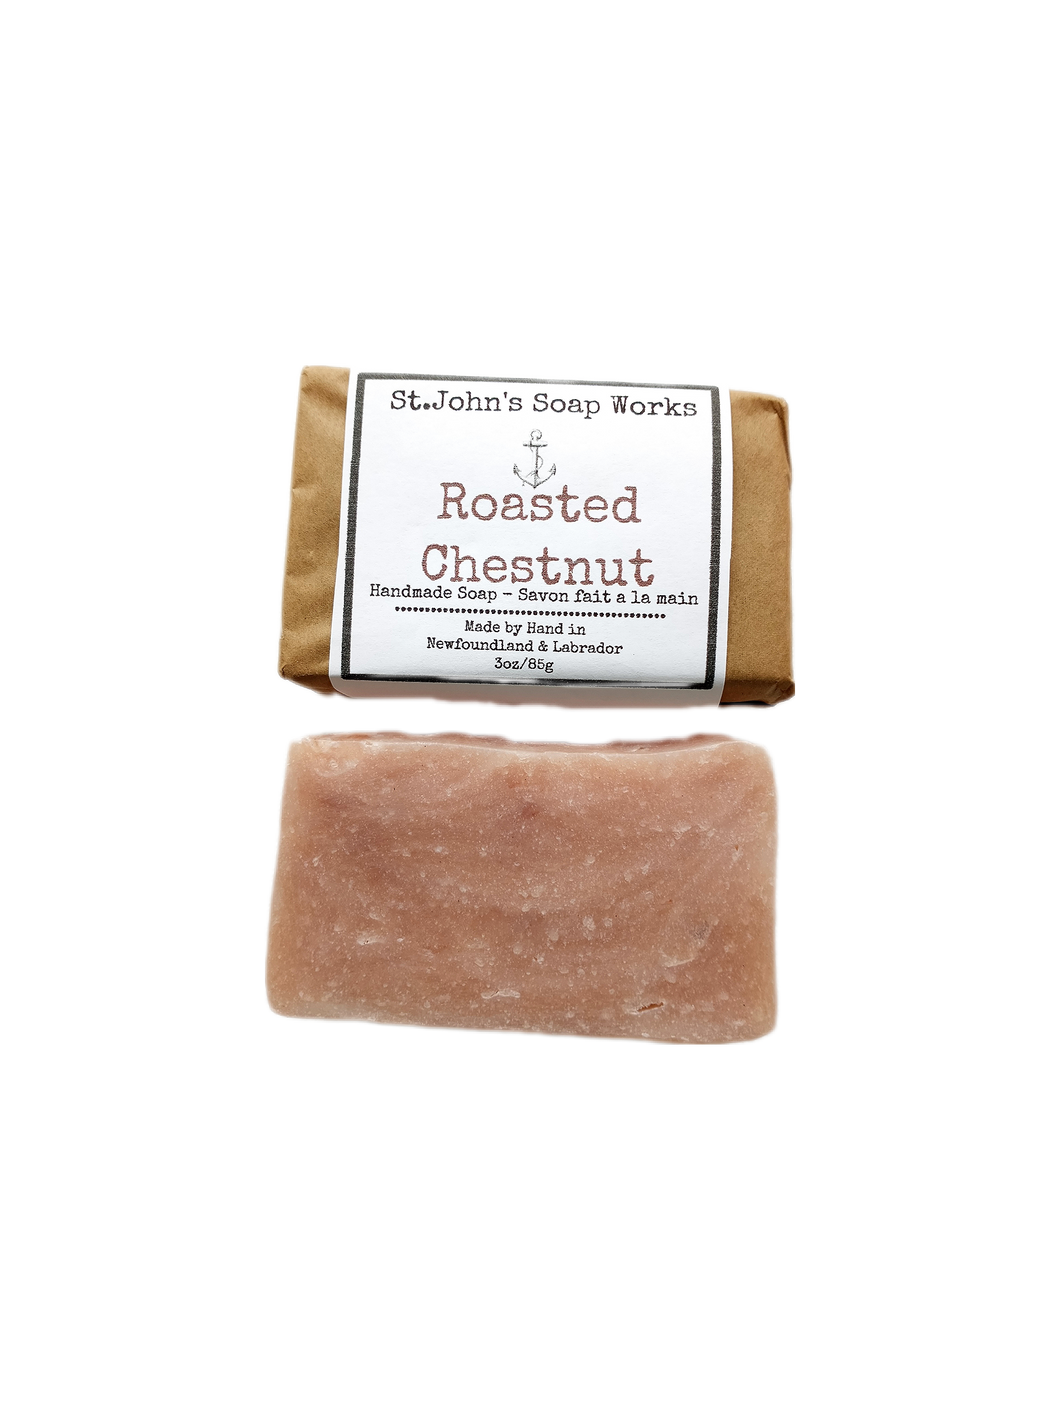 Roasted Chestnut Handmade Soap